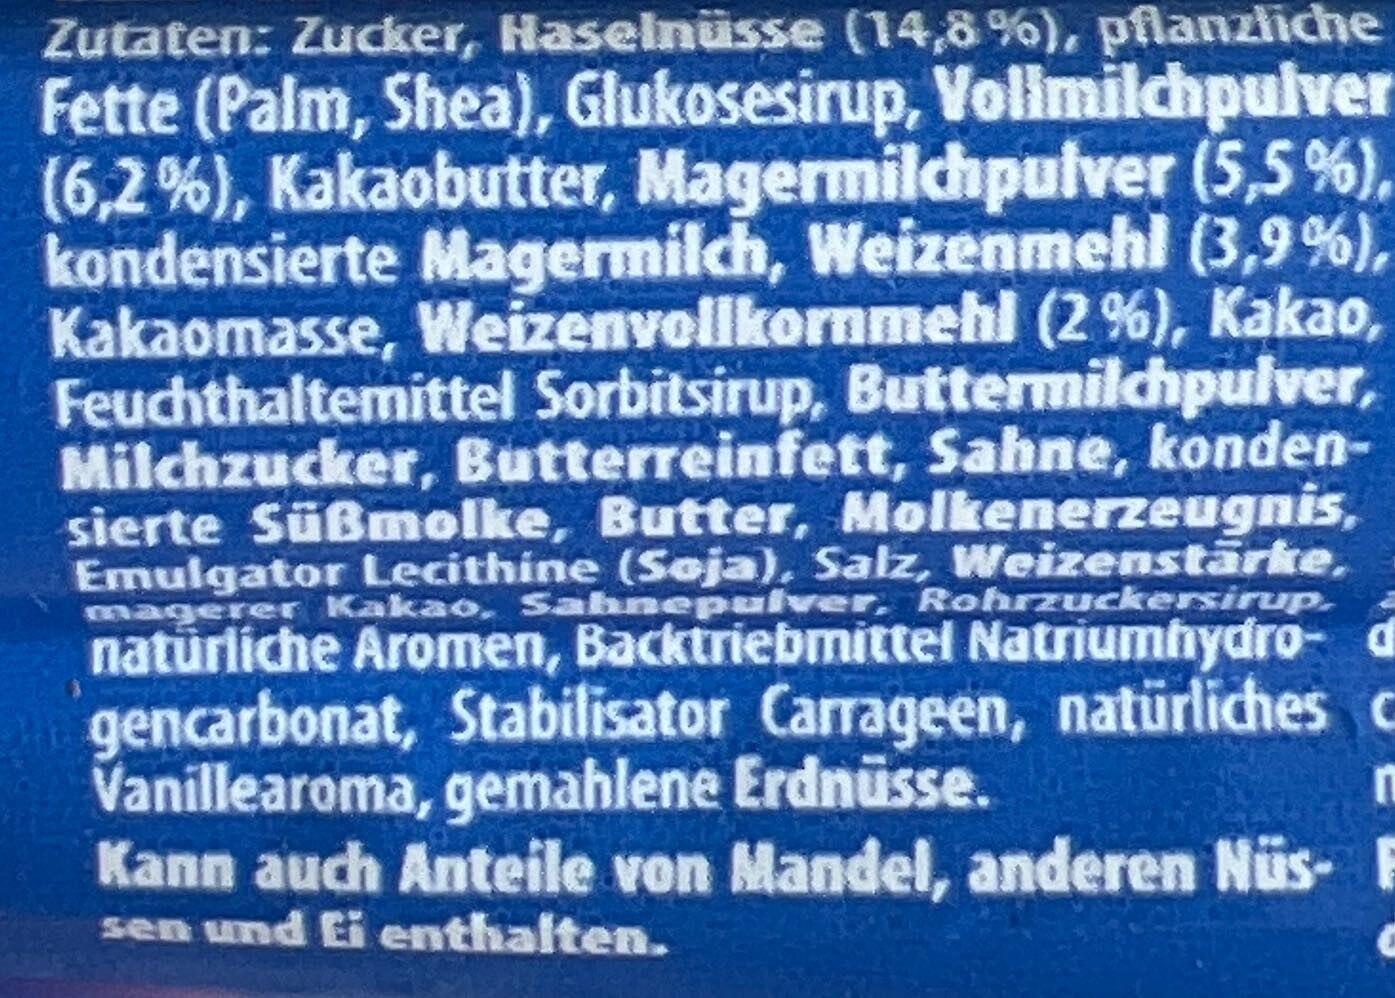 Knoppers NussRiegel - Ingredients - de